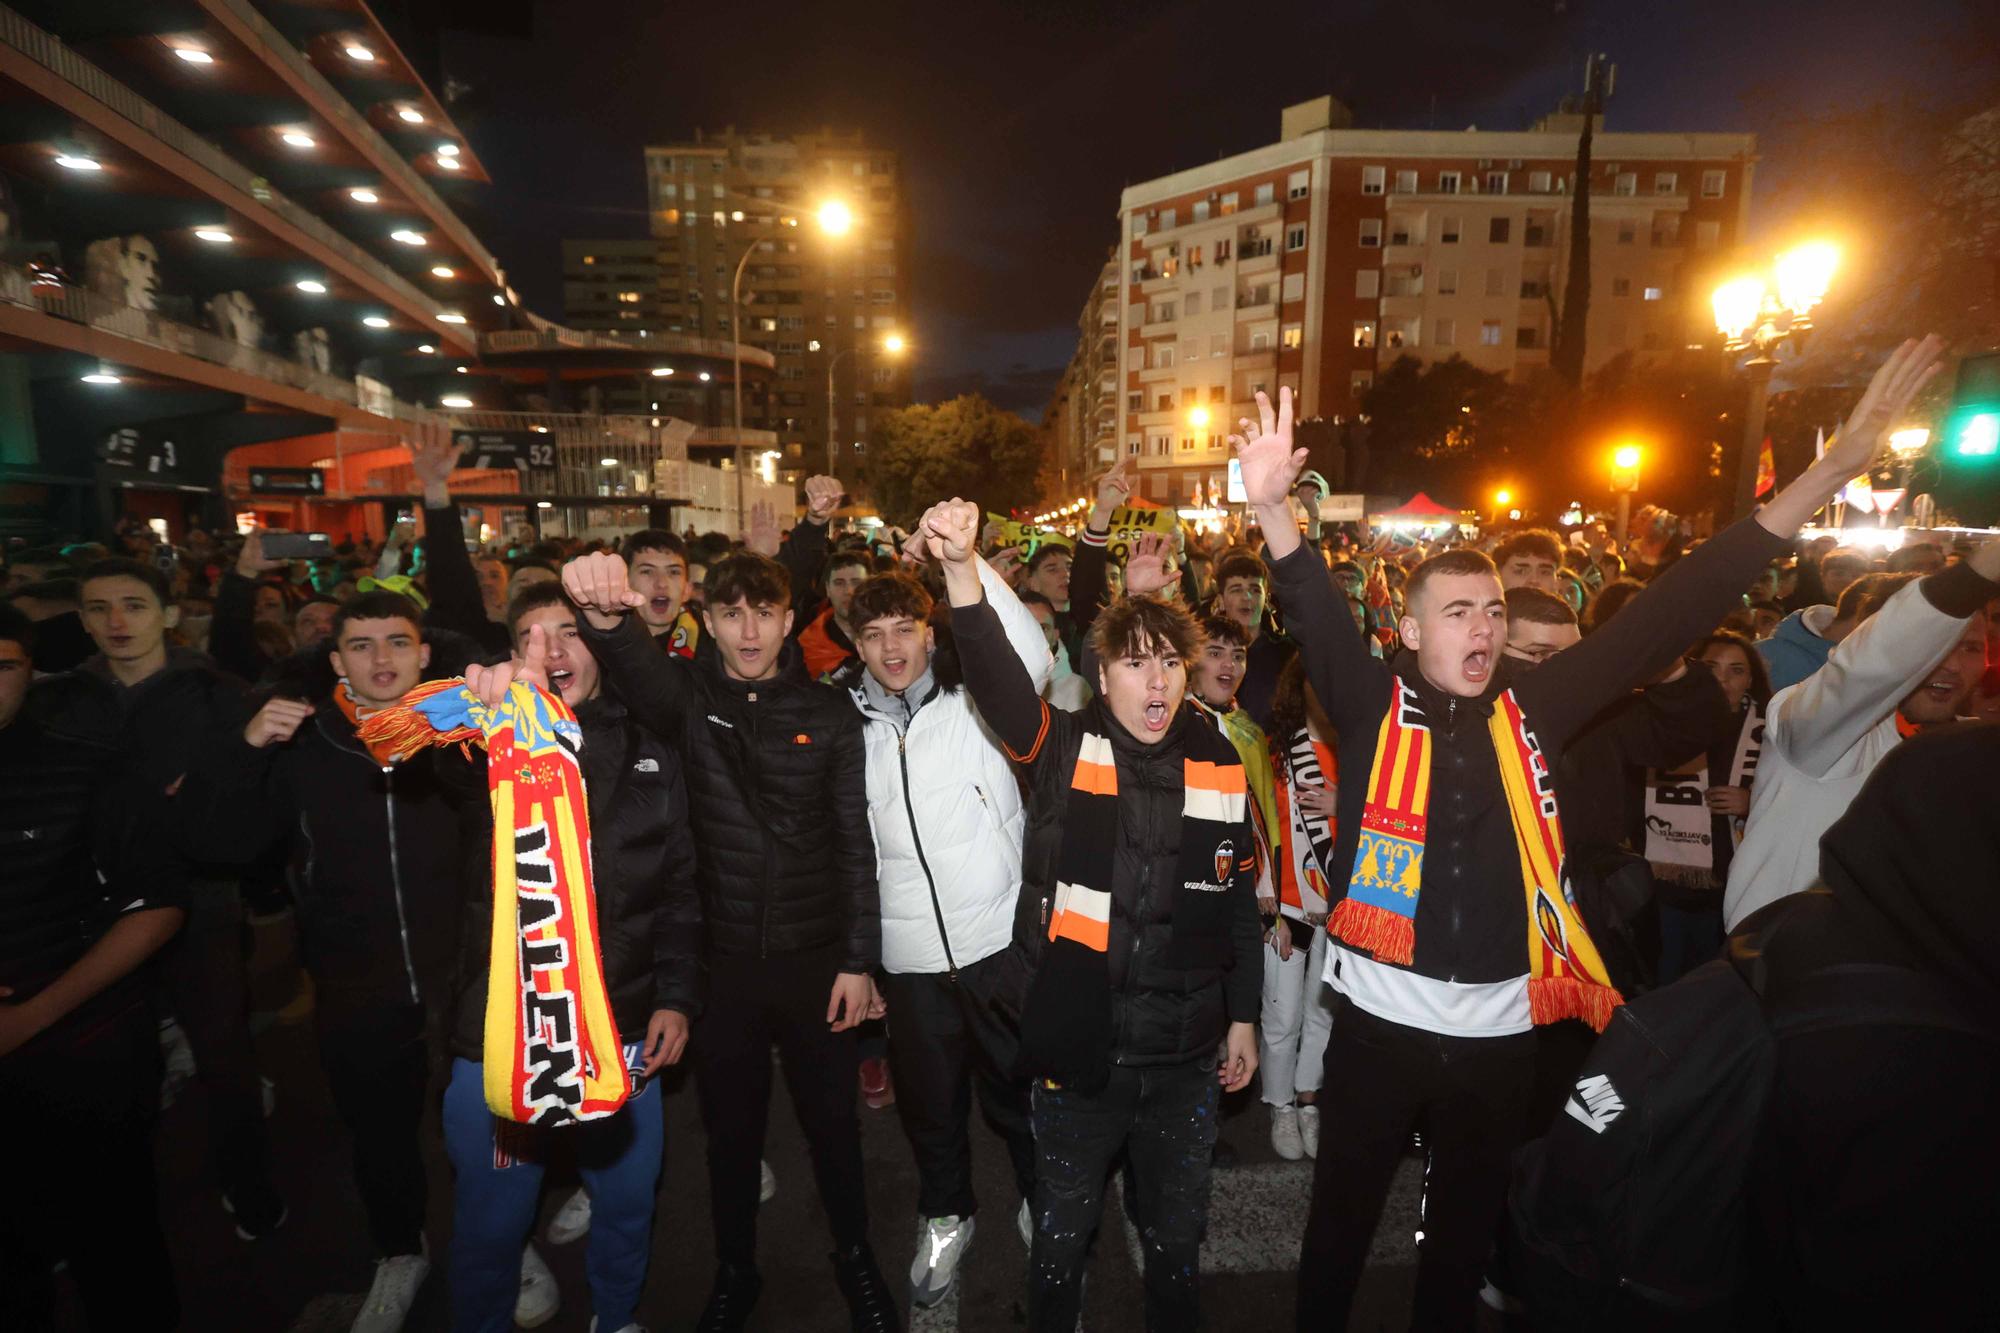 La victoria del Valencia CF en imágenes